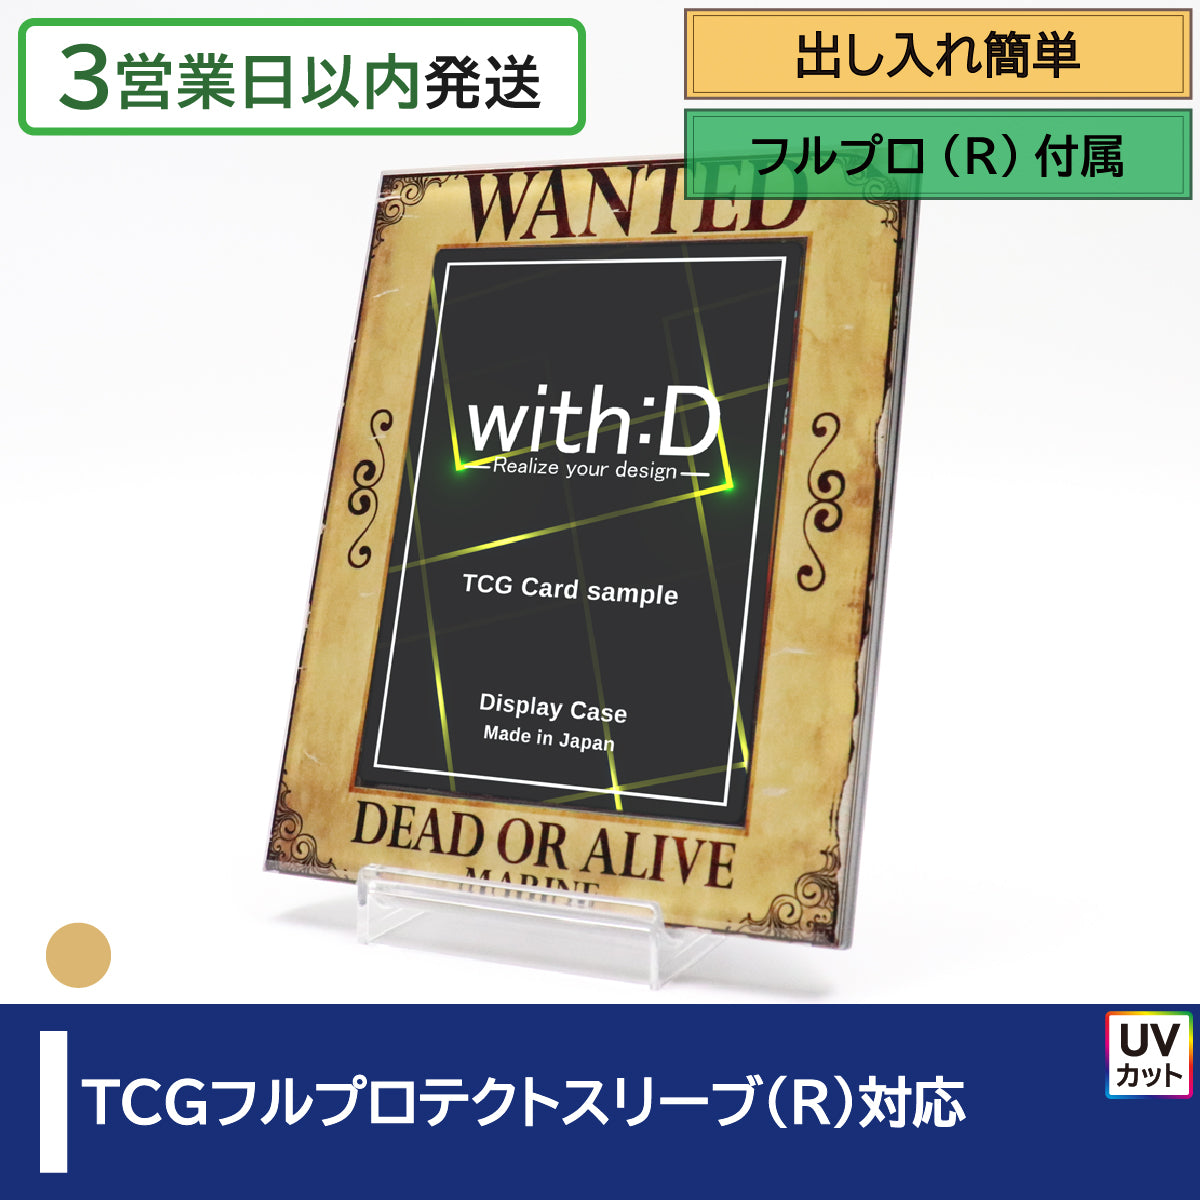 TCGフルプロテクト対応 – with:D